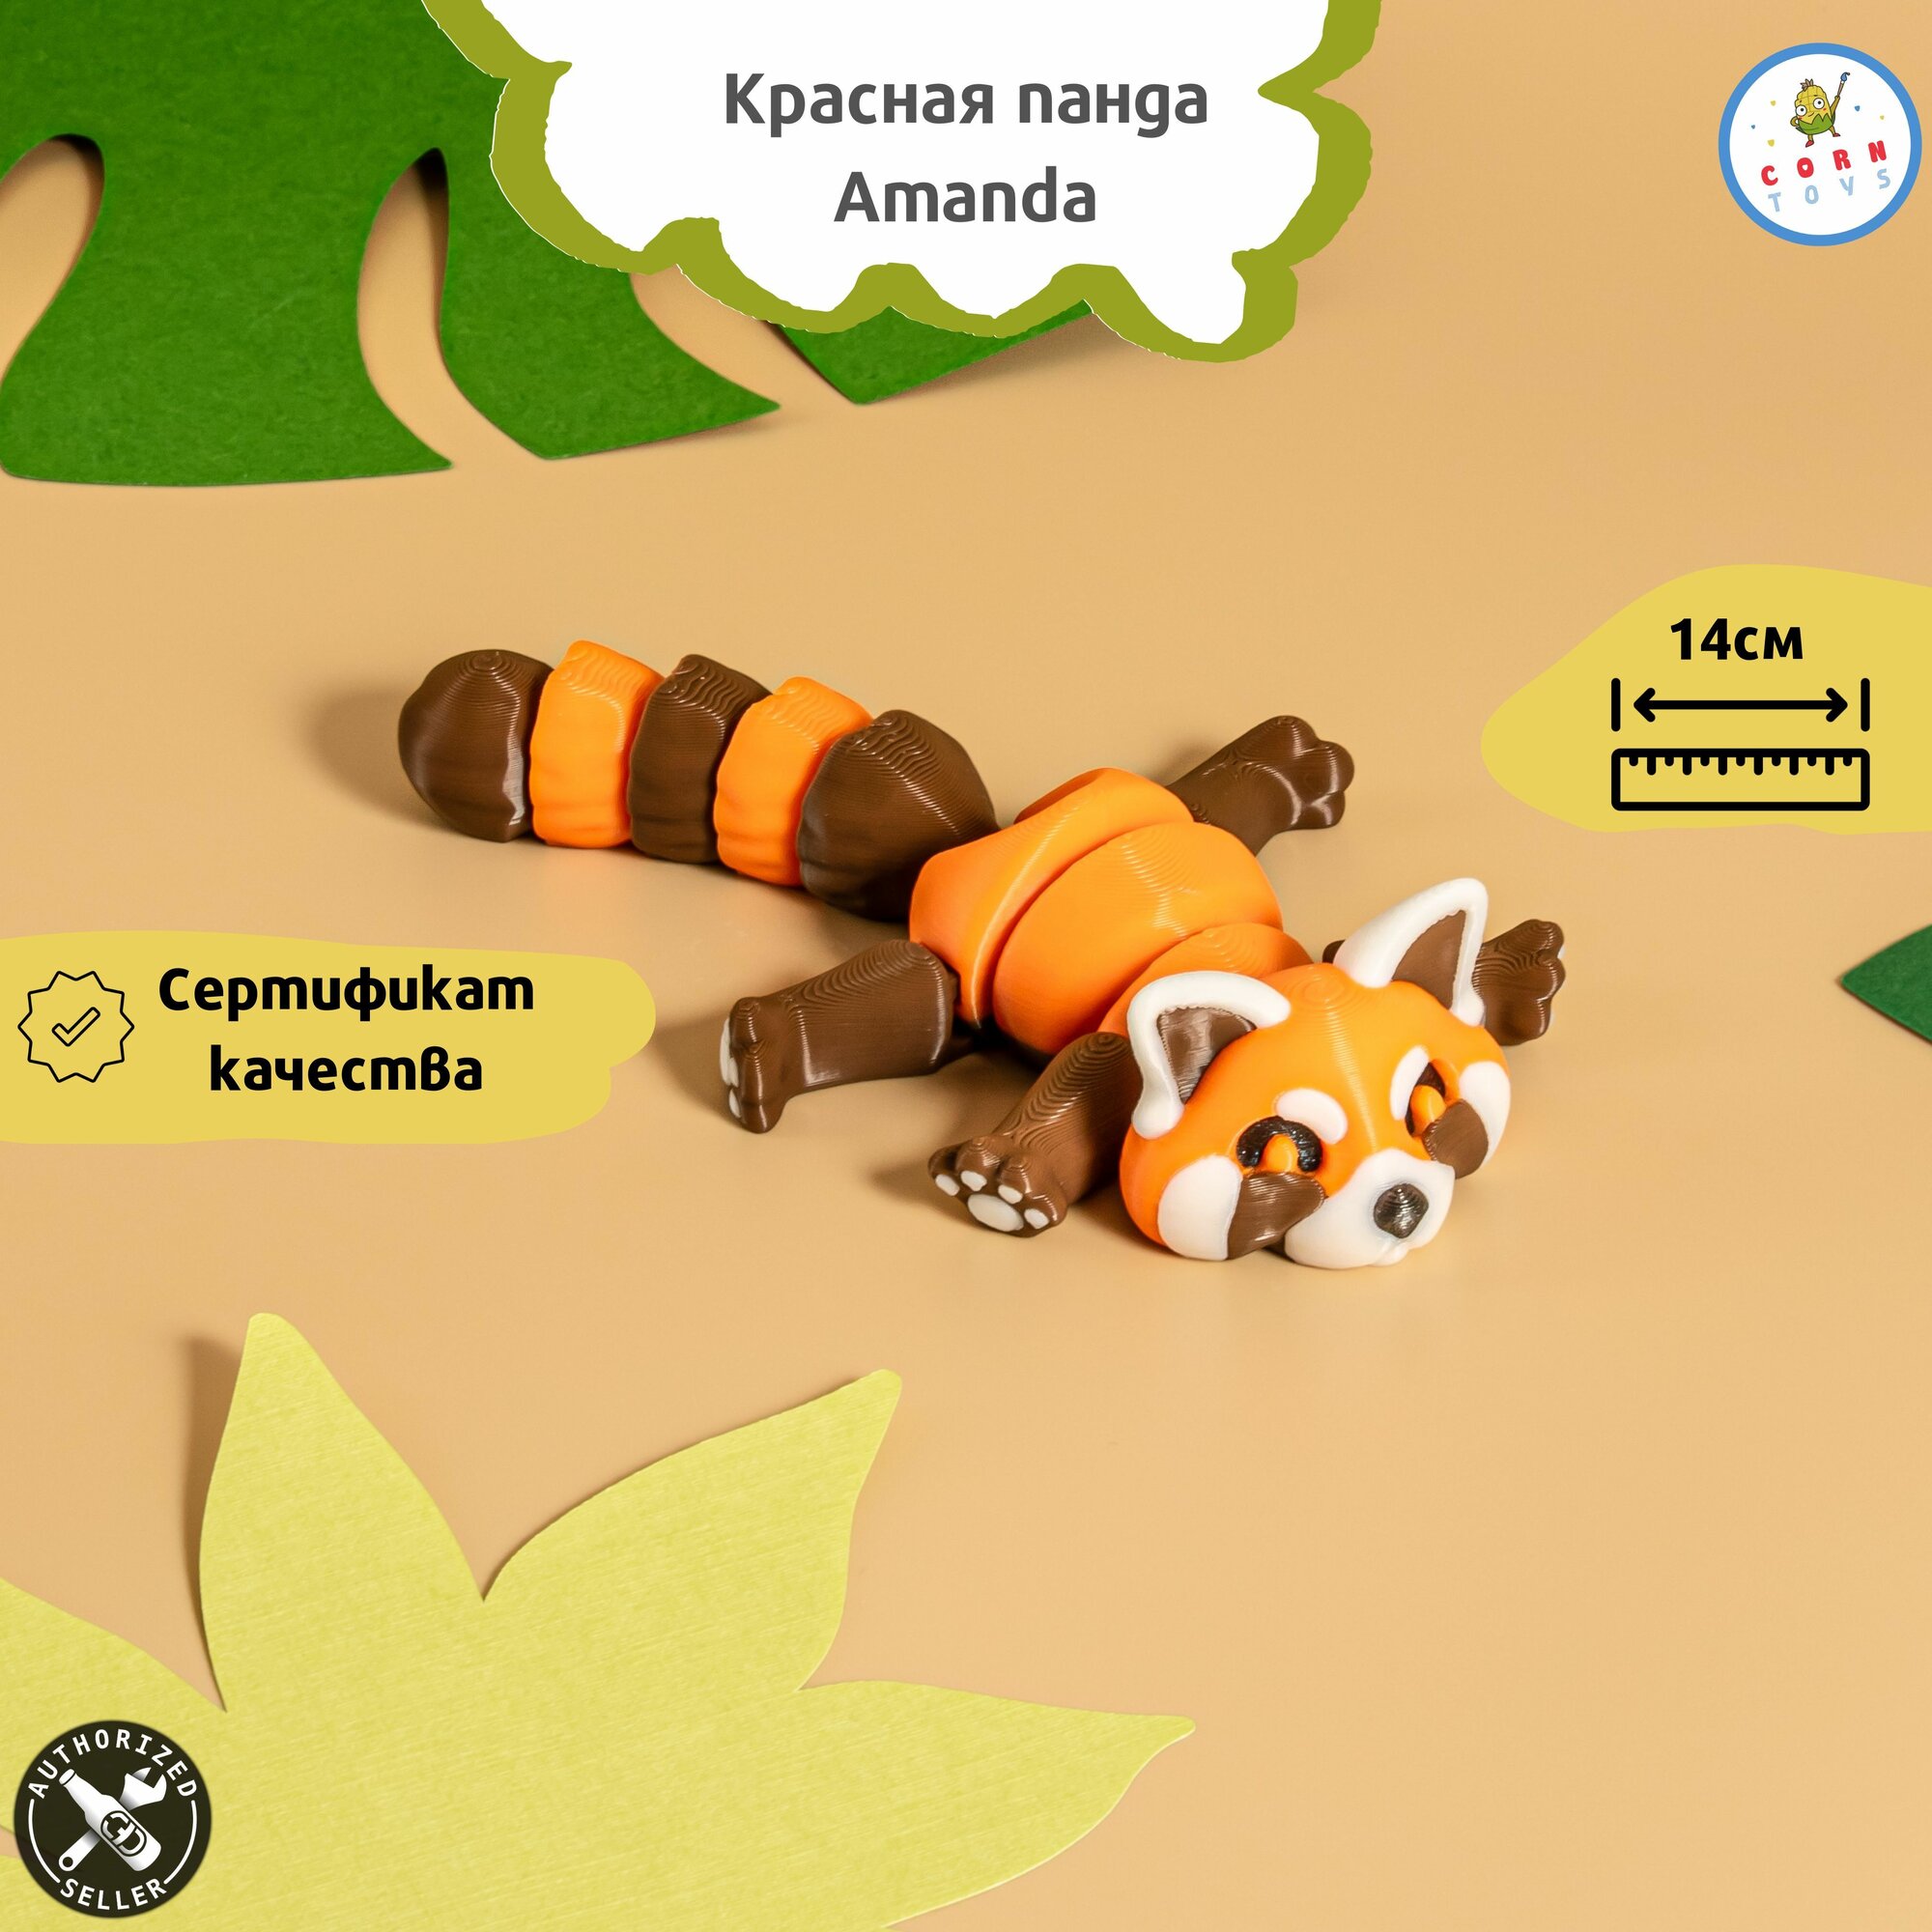 Подвижная антистресс игрушка Красная панда Amanda